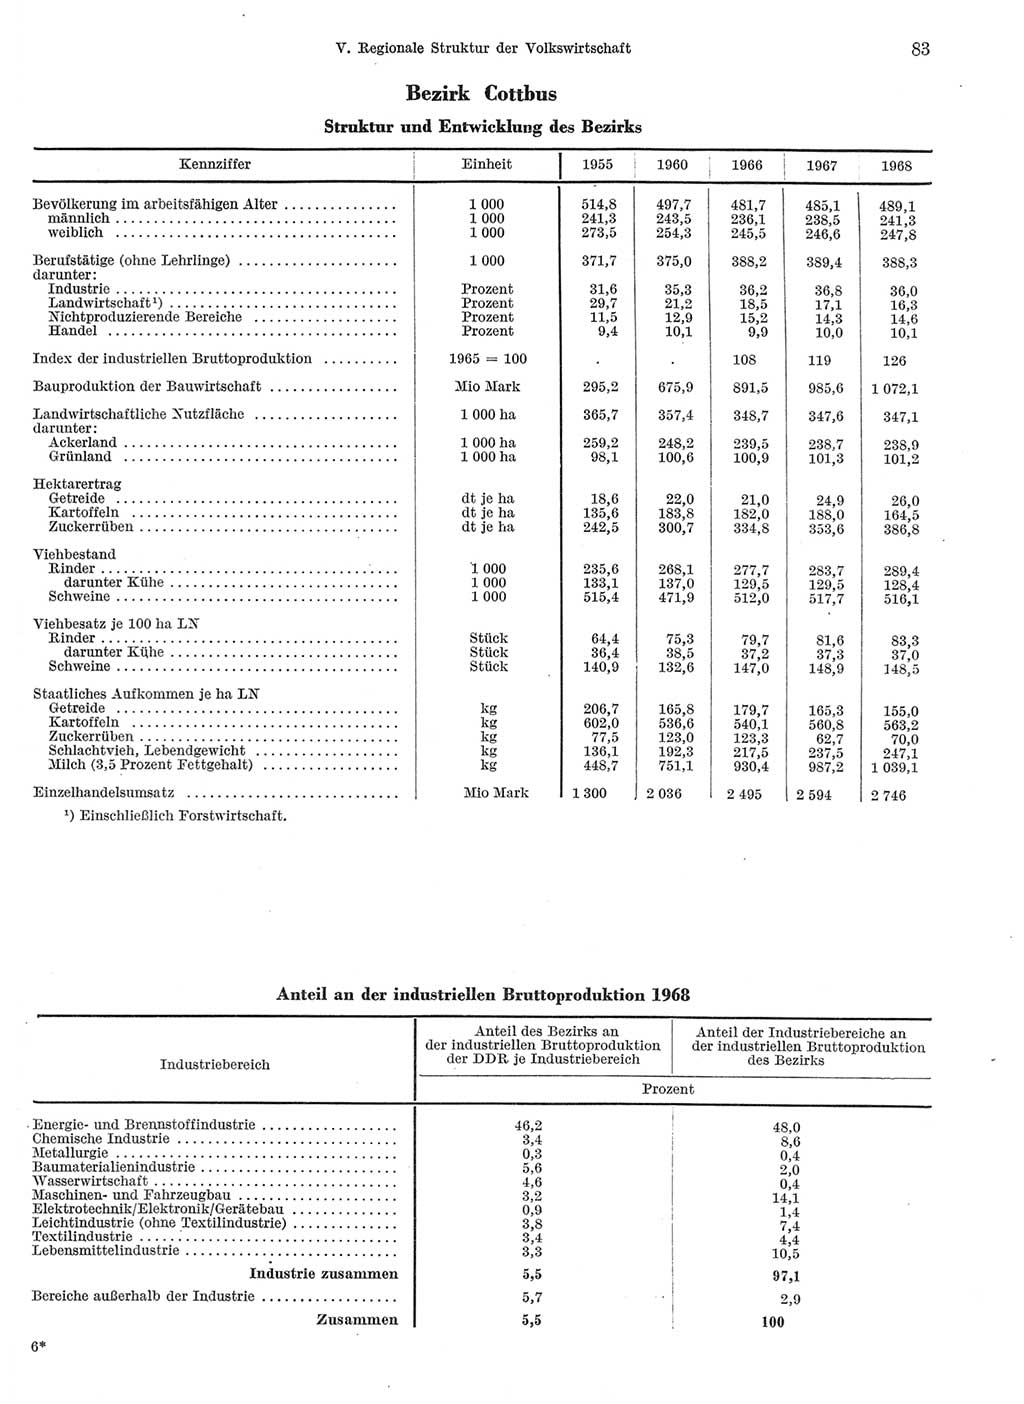 Statistisches Jahrbuch der Deutschen Demokratischen Republik (DDR) 1969, Seite 83 (Stat. Jb. DDR 1969, S. 83)